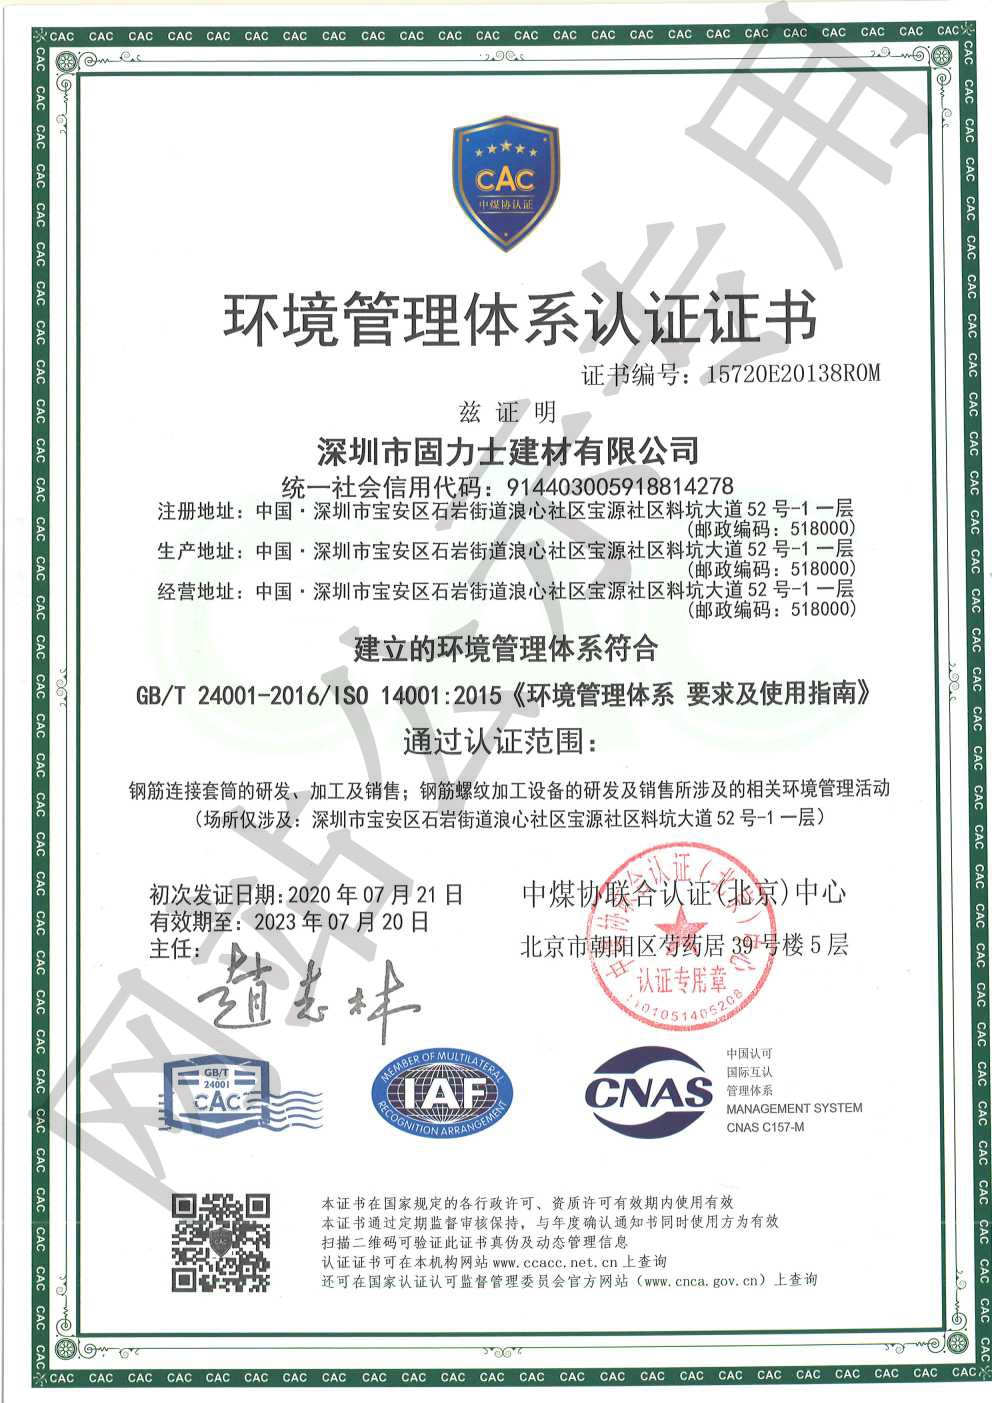 琅琊ISO14001证书